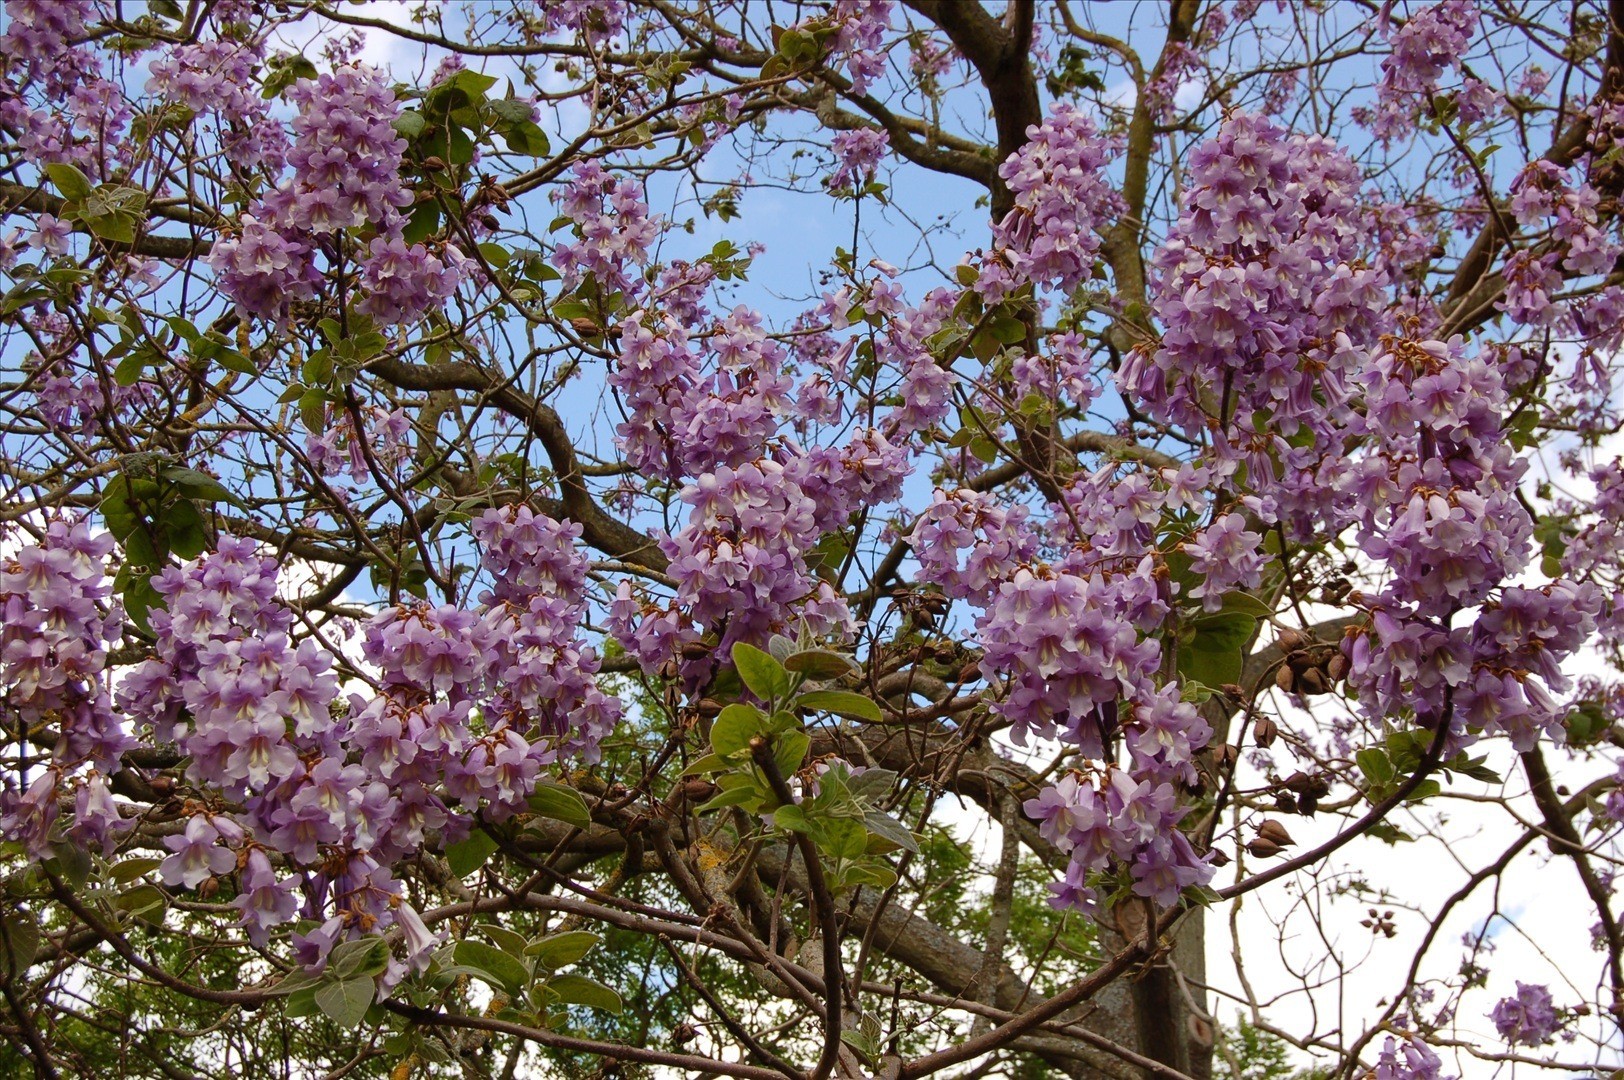 Фото дерево павлония как цветет